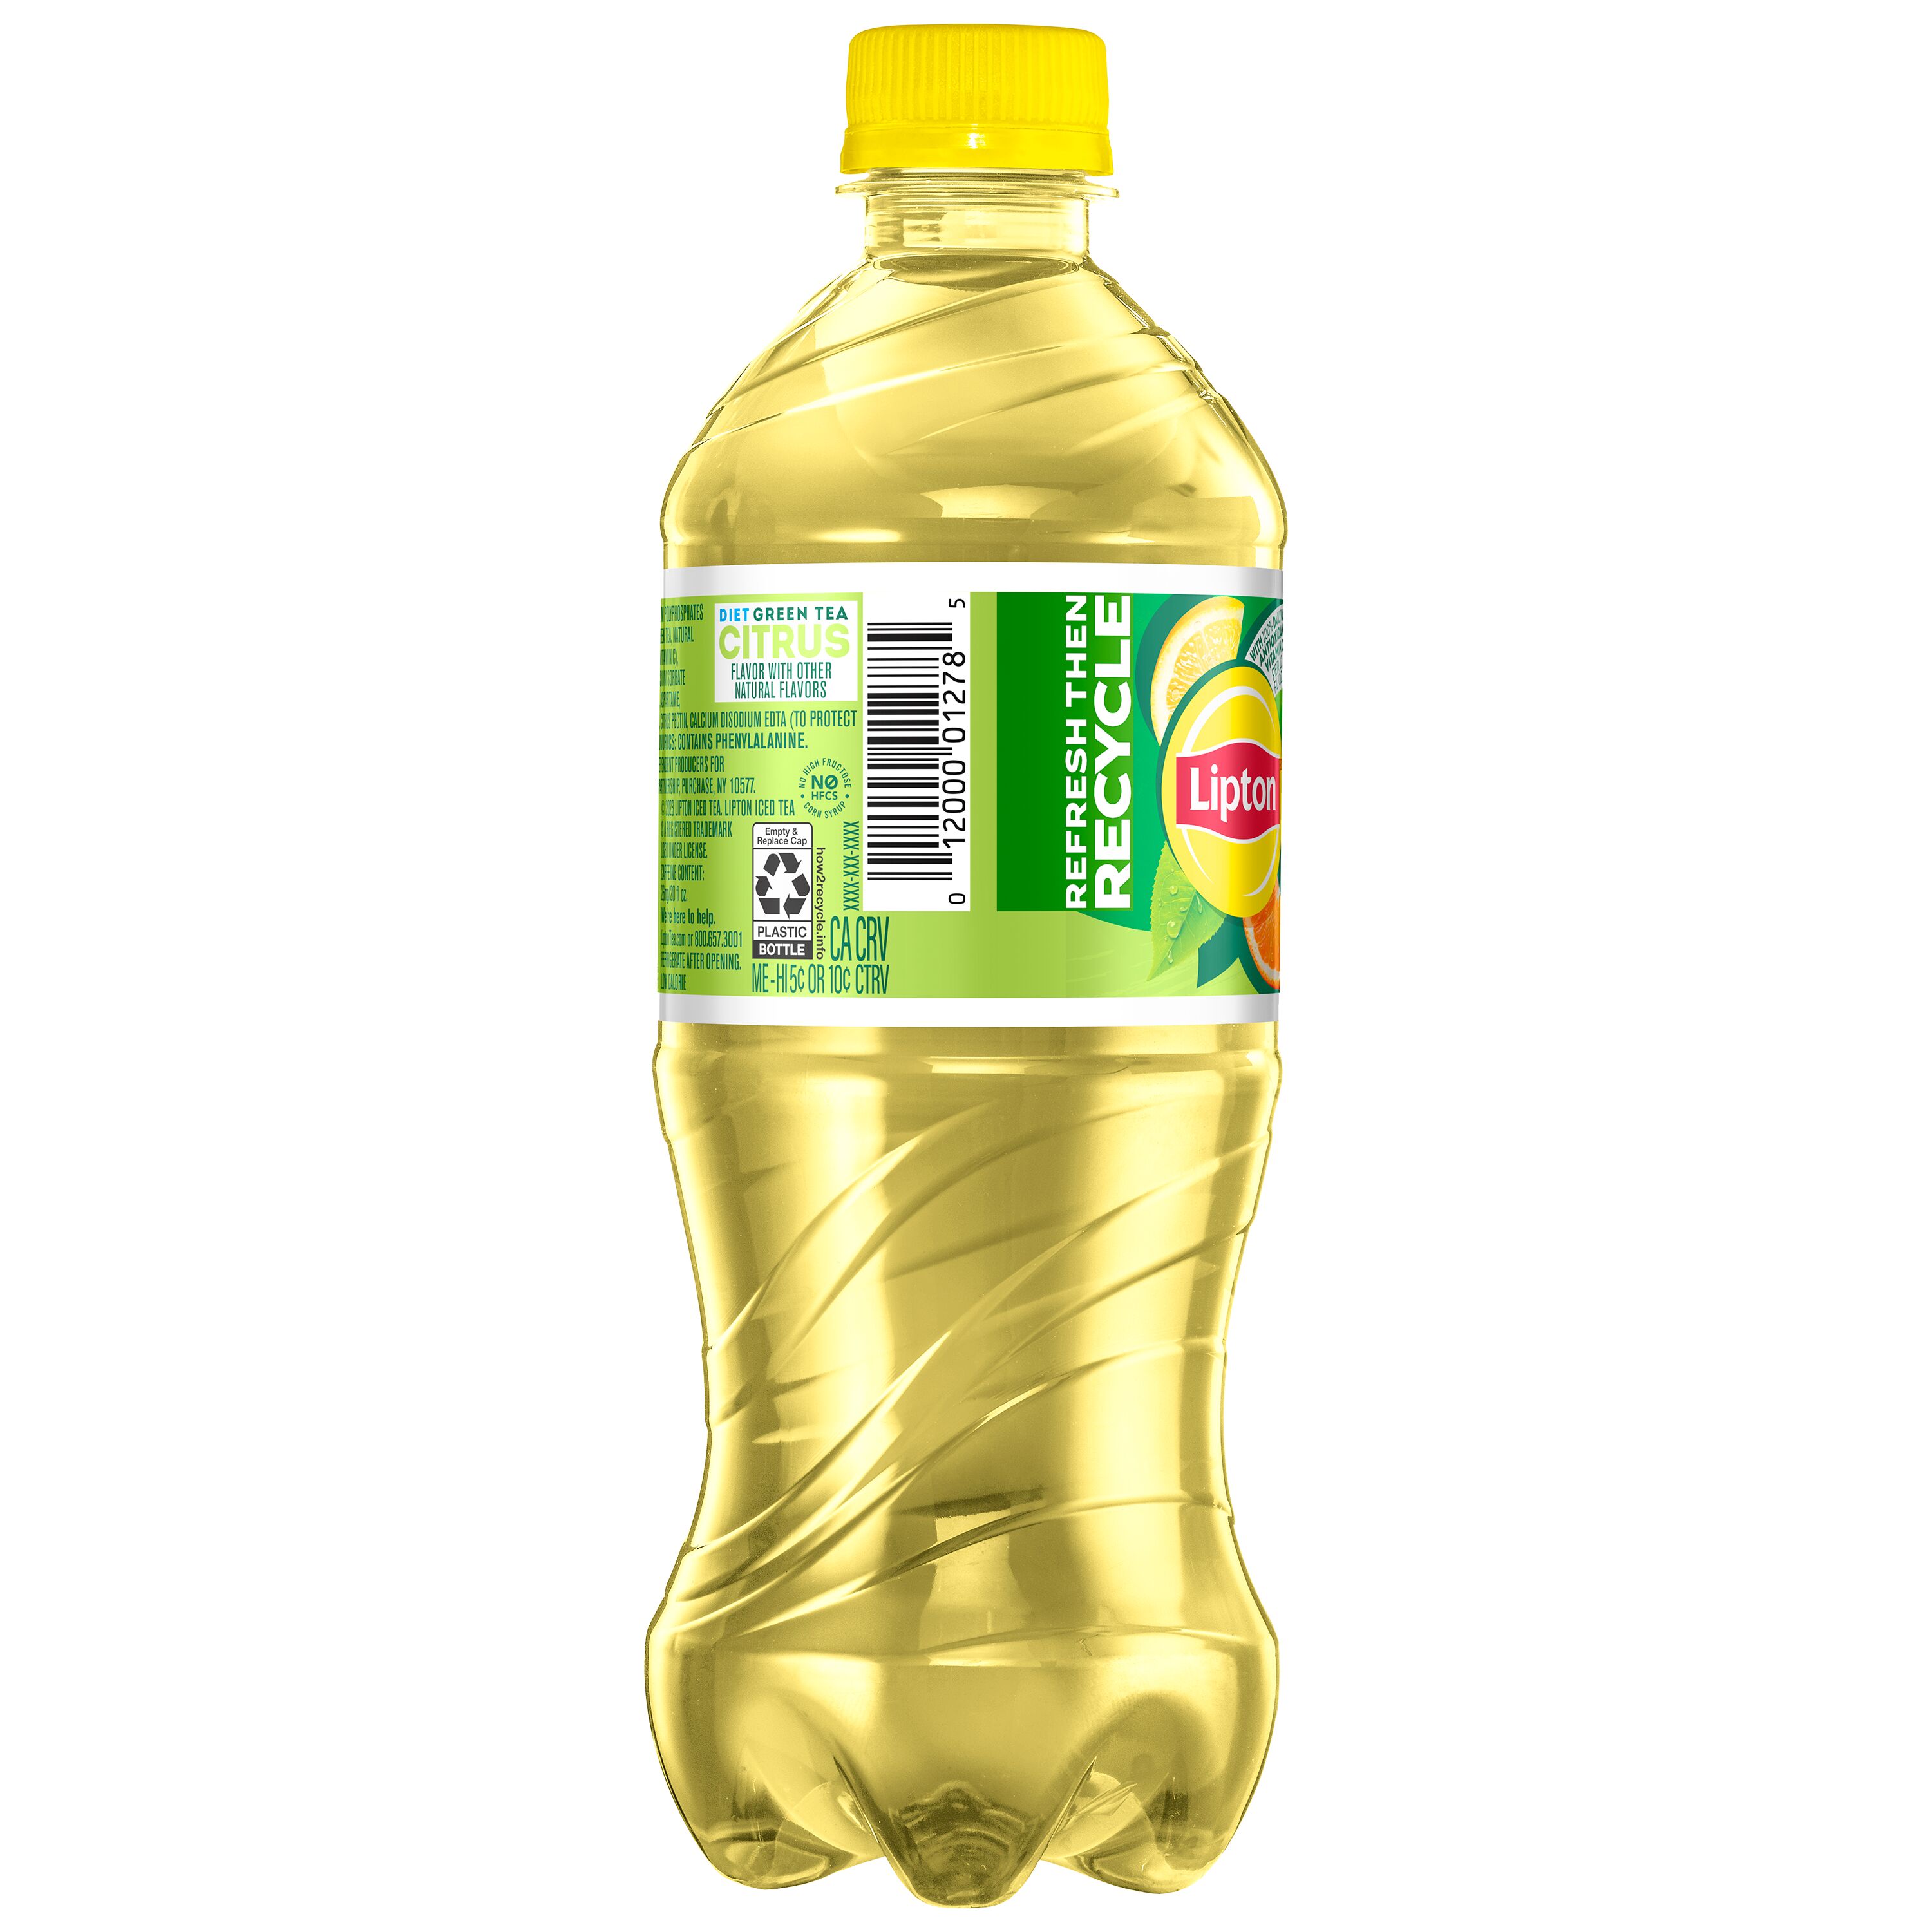 Lipton Diet Green Tea Citrus, Bottled Tea Drink, 20 fl oz, Bottle - image 2 of 5